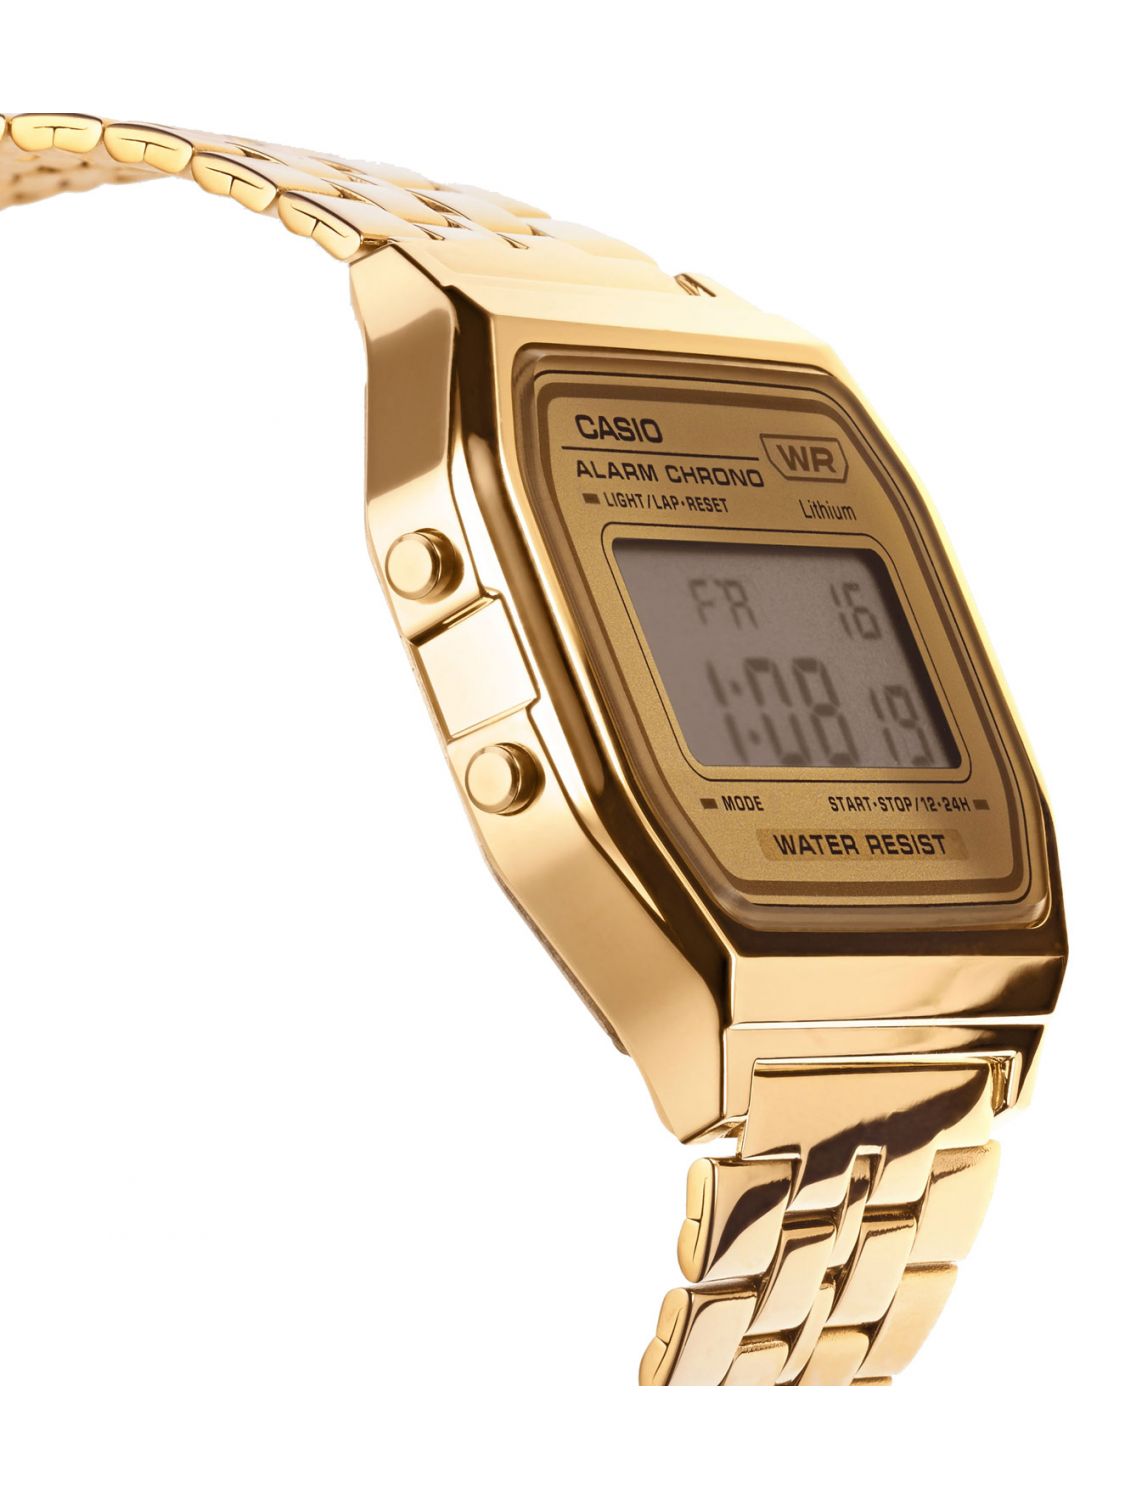 Casio Vintage Digital Watch Gold Tone A158WETG-9AEF • uhrcenter